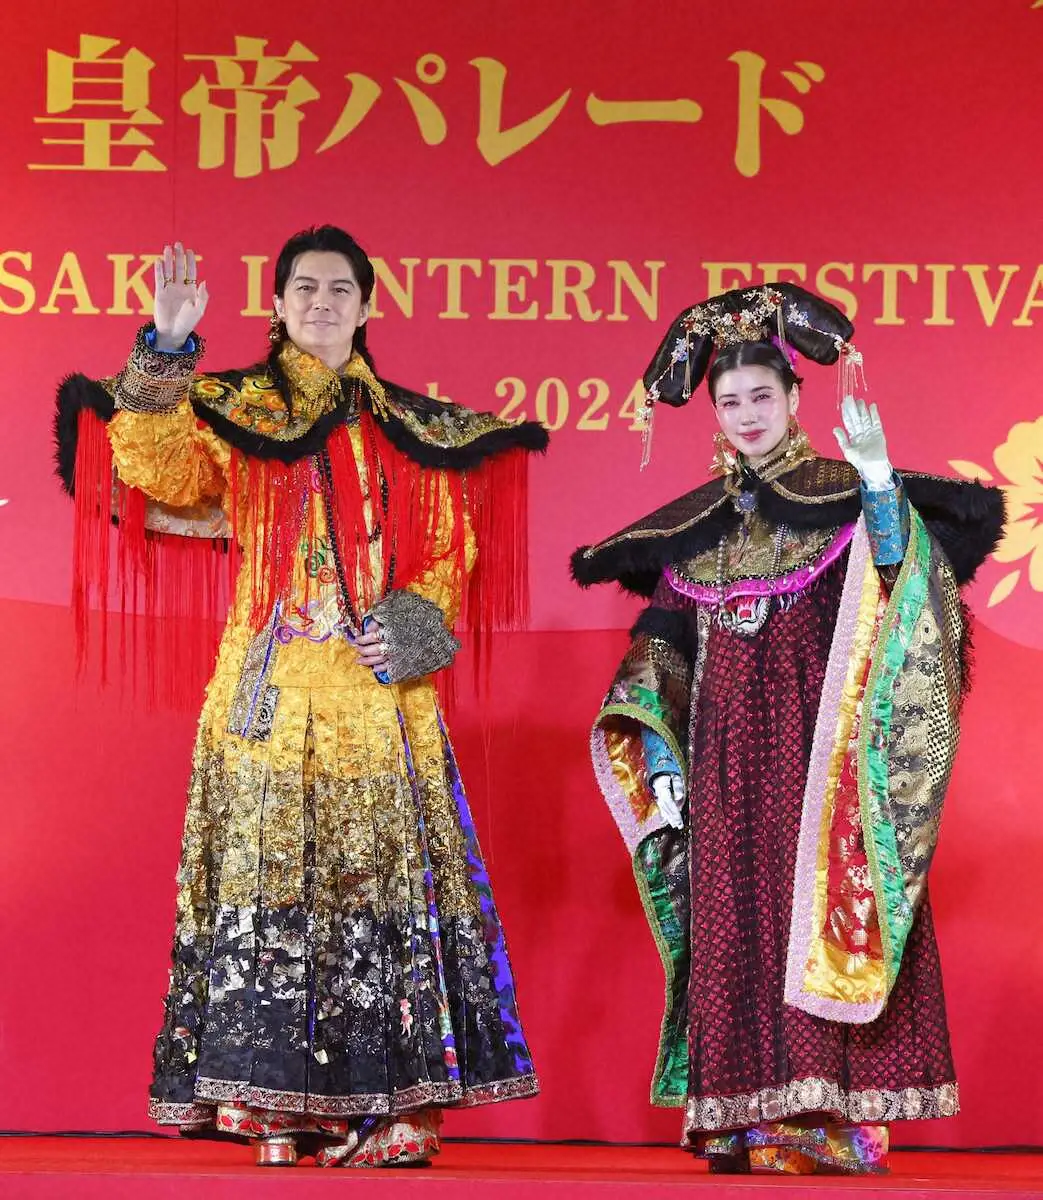 「長崎ランタンフェスティバル」の「皇帝パレード」に出演した、歌手の福山雅治（左）と俳優の仲里依紗